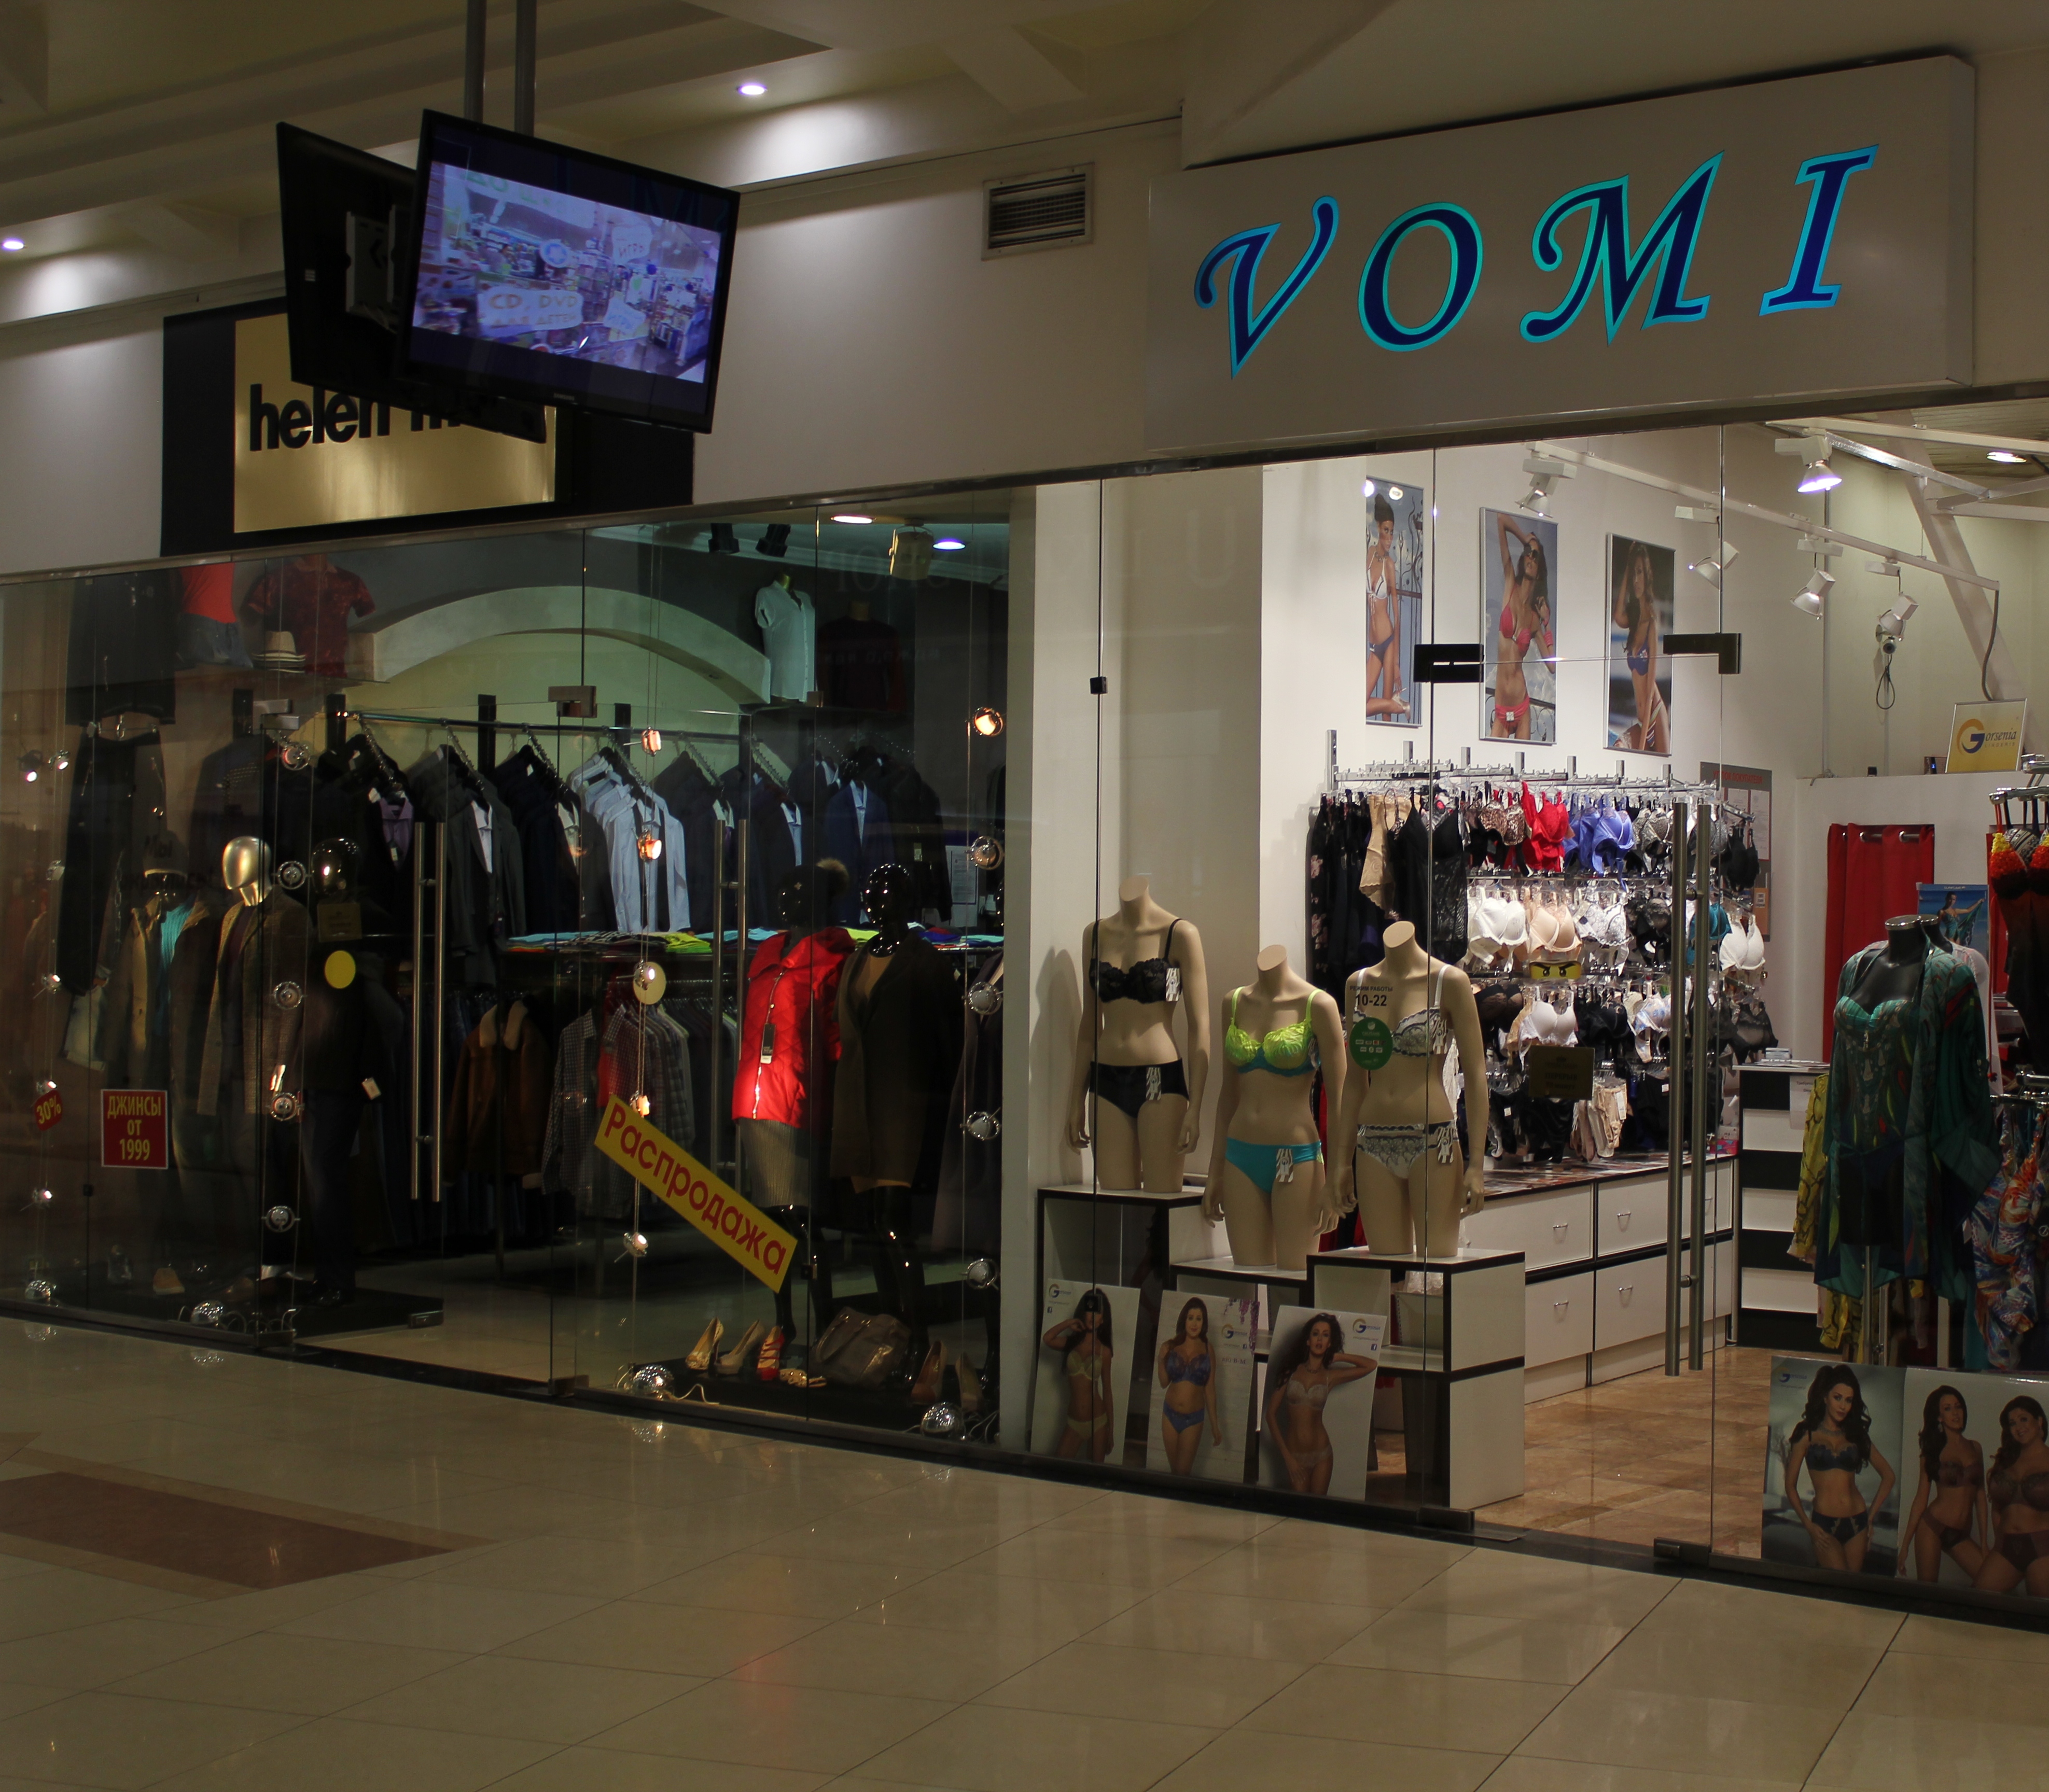 Магазин Пляжной Одежды В Москве